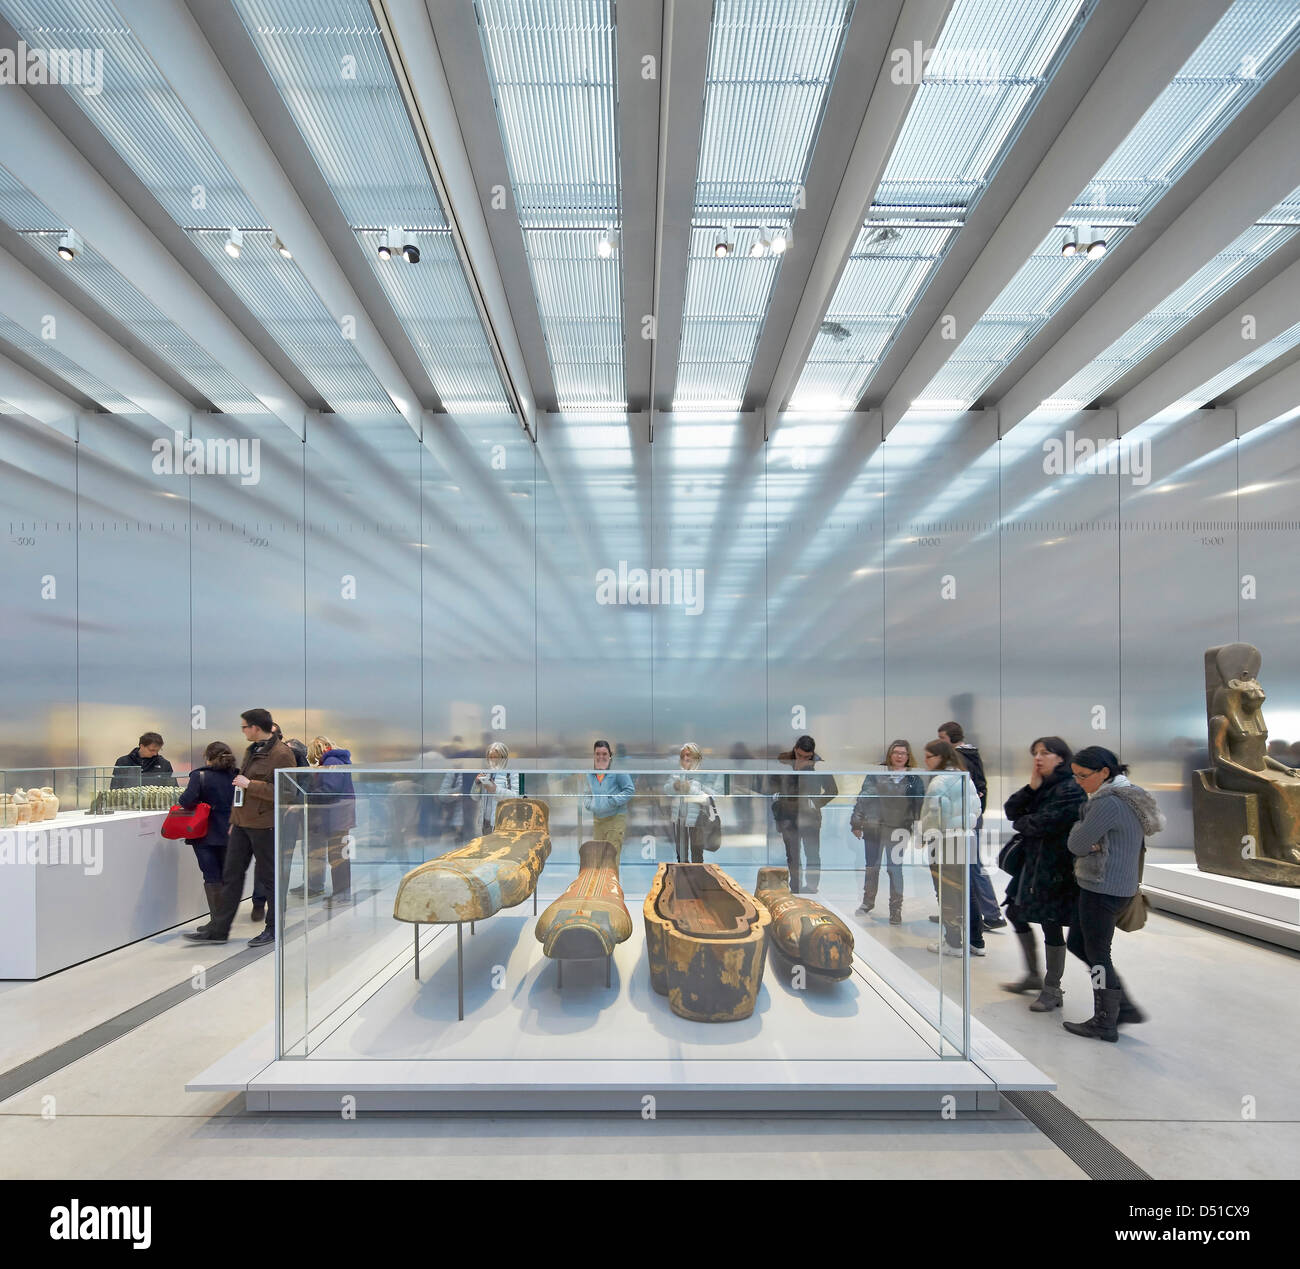 Musée Du Louvre Objektiv, Lens, Frankreich. Architekt: SANAA, 2012. Die Dauerausstellung Halle mit Glasdach, reflektierende w Stockfoto